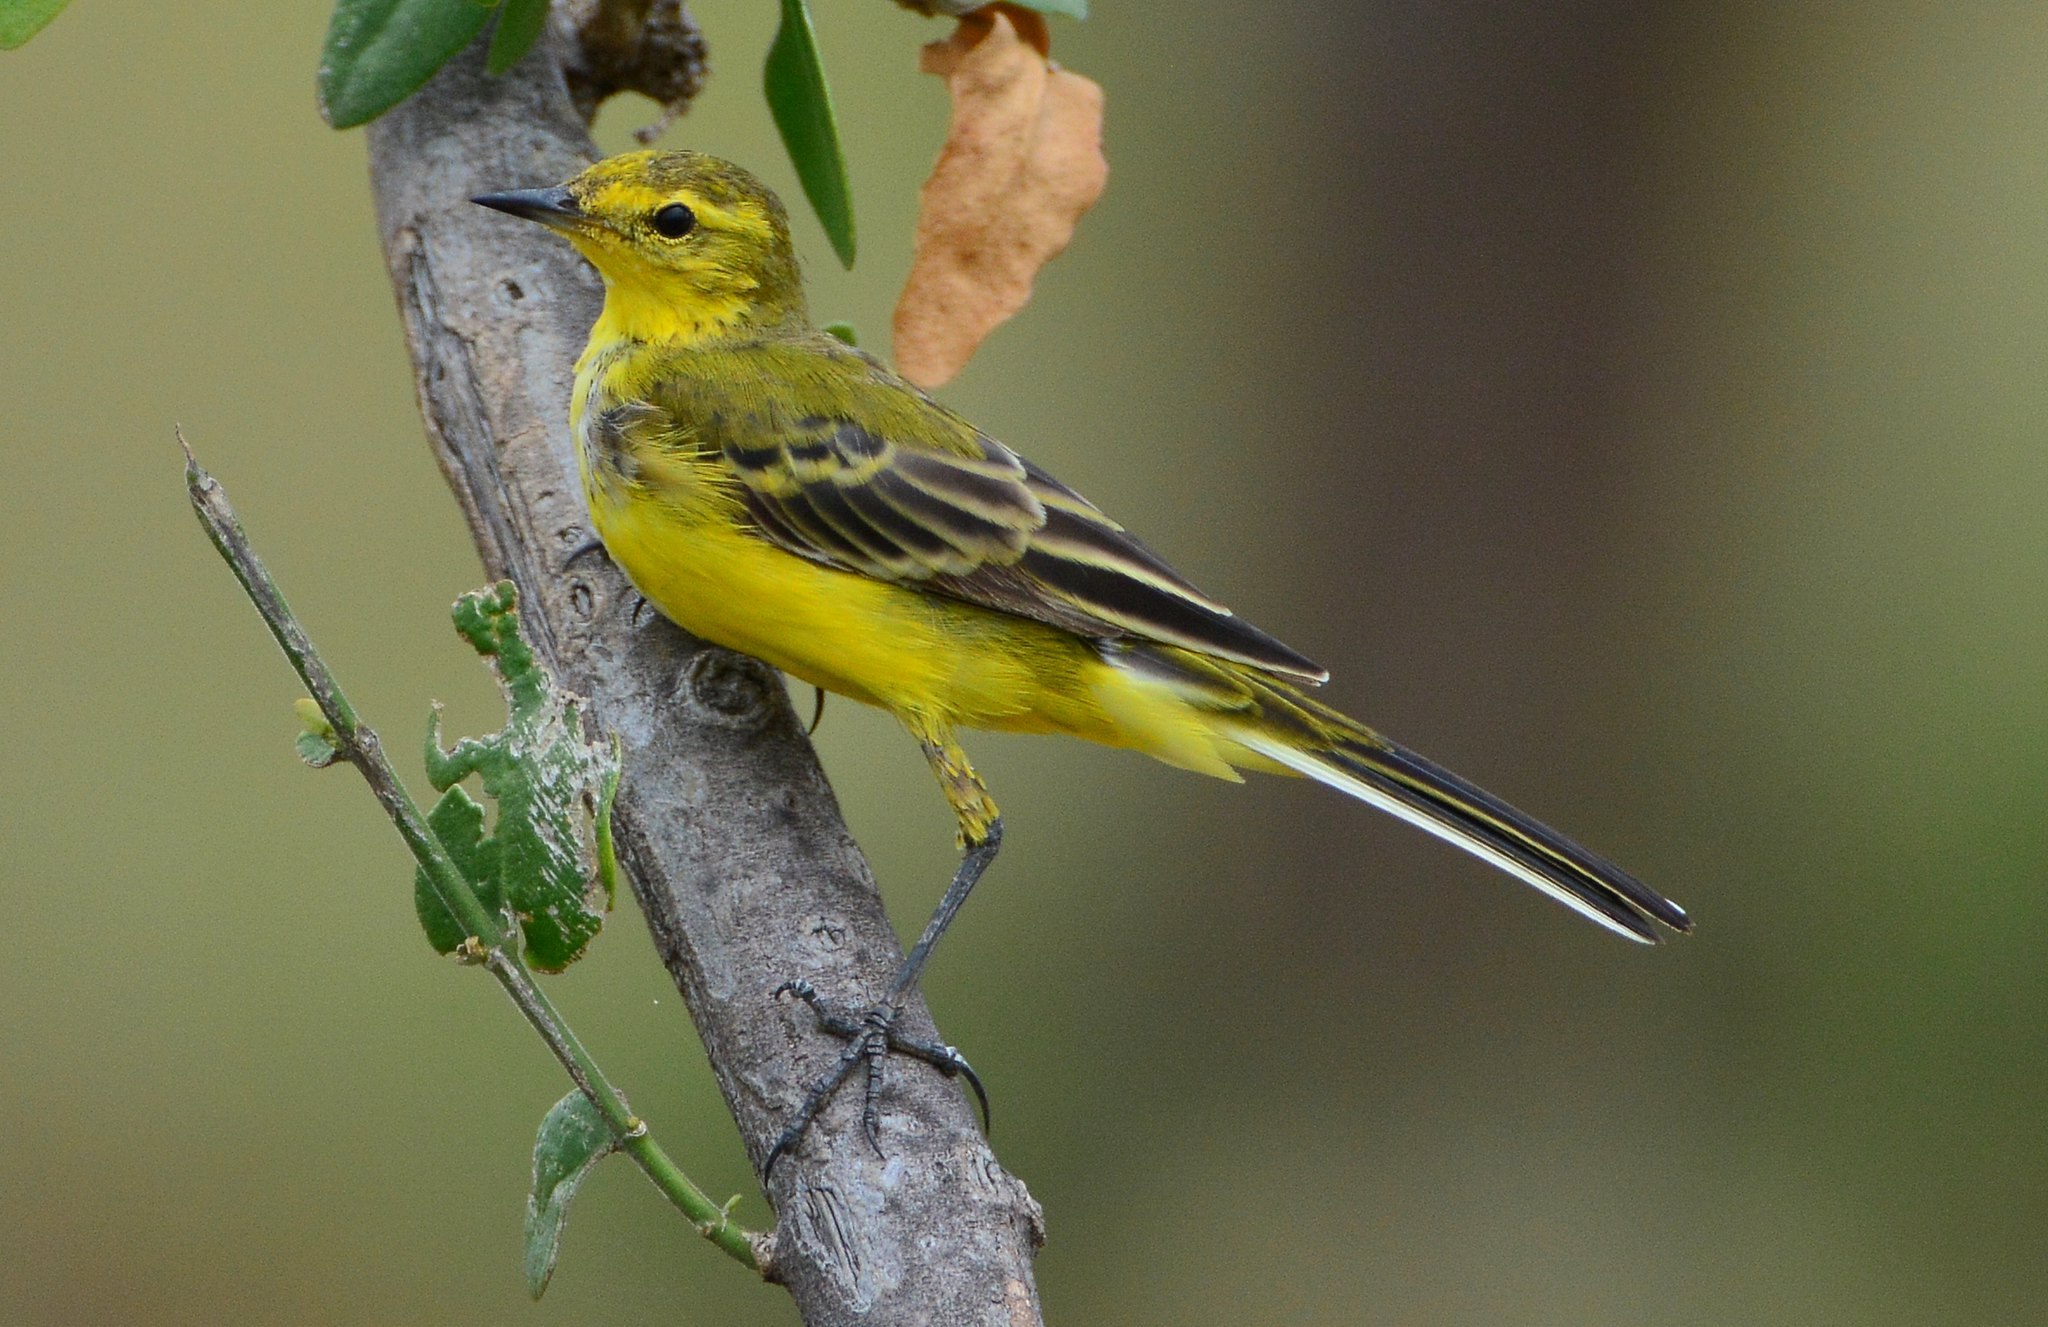 Желтая птица похожая на воробья. Маленькая птичка с желтой грудкой. Птица с жёлтой грудкой похожа на воробья. Птицы Молдавии с желтой грудкой. Маленькие птицы с желтой грудкой.